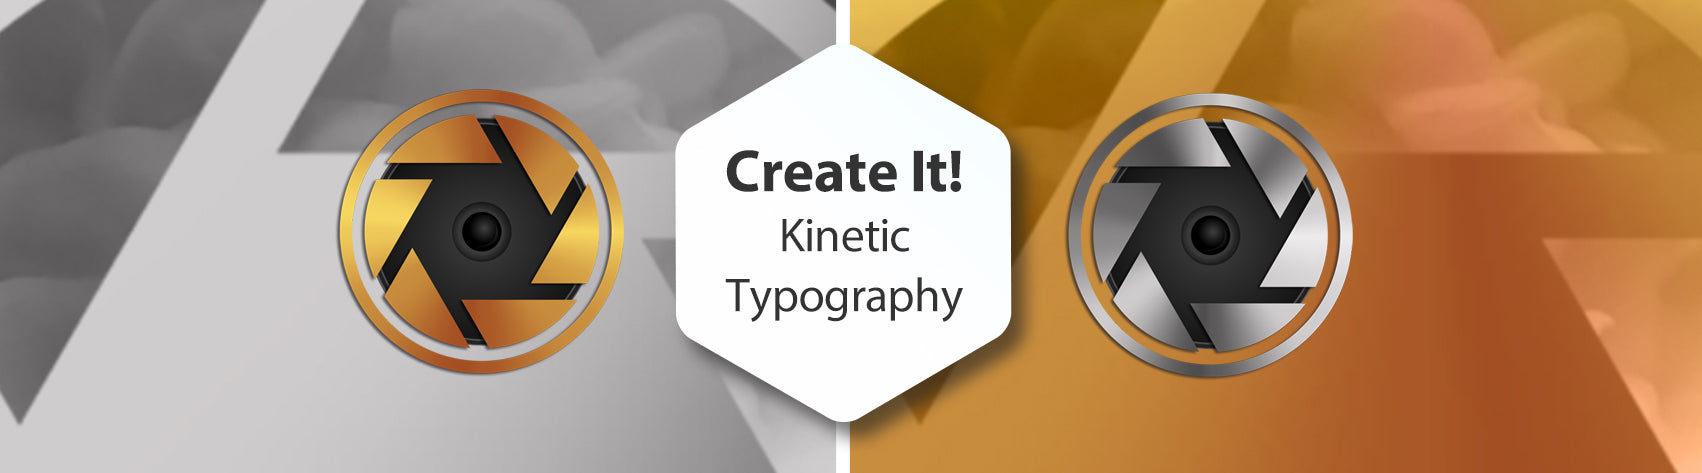 Create It! Kinetic Typography